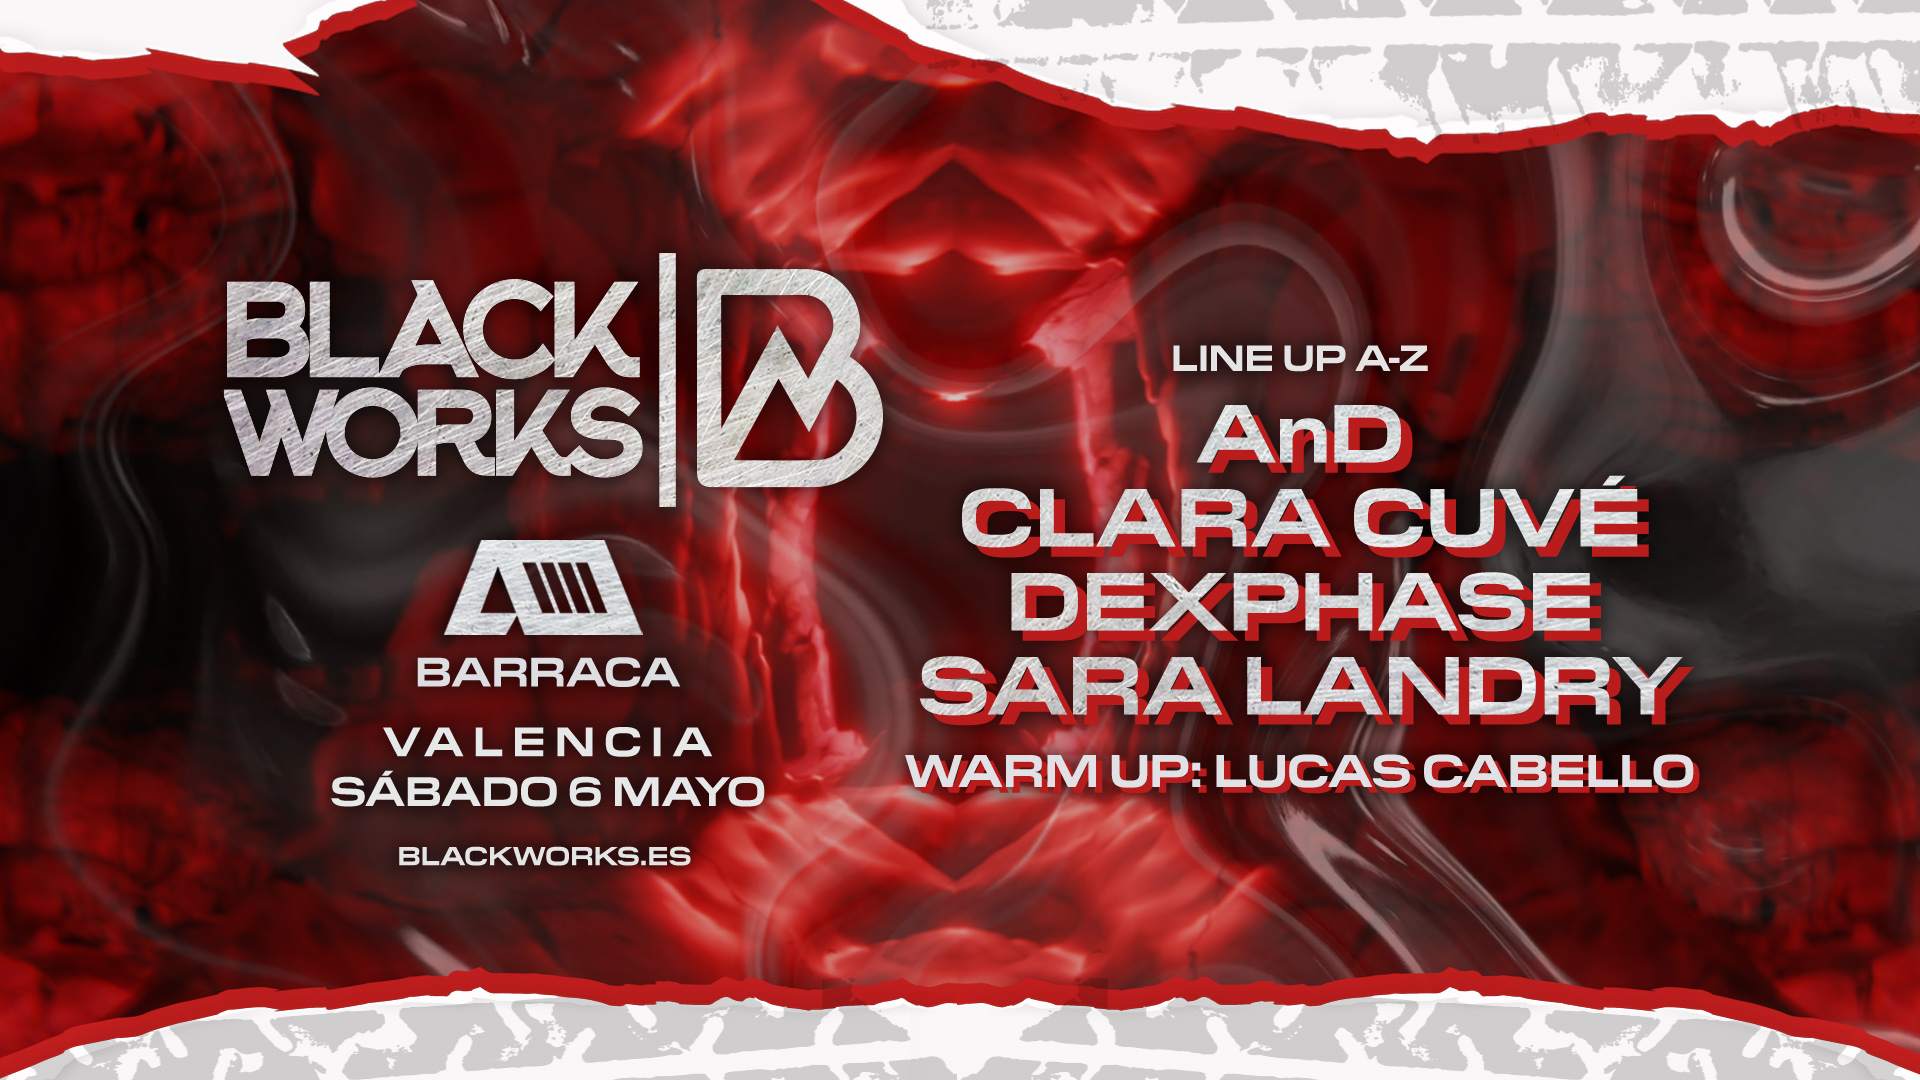 BlackWorks Valencia - Página frontal